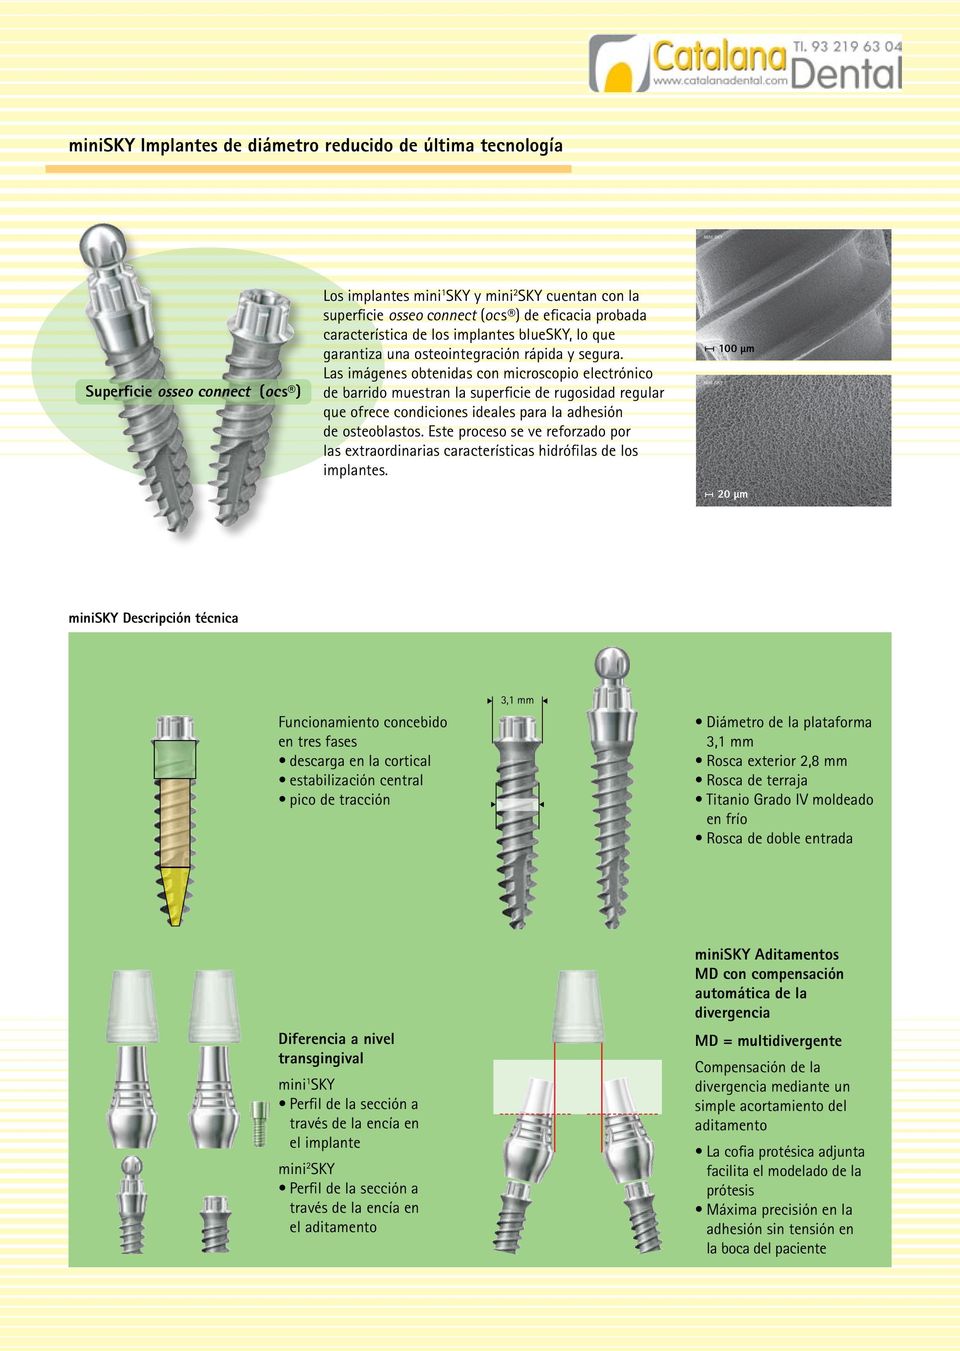 Las imágenes obtenidas con microscopio electrónico de barrido muestran la superficie de rugosidad regular que ofrece condiciones ideales para la adhesión de osteoblastos.